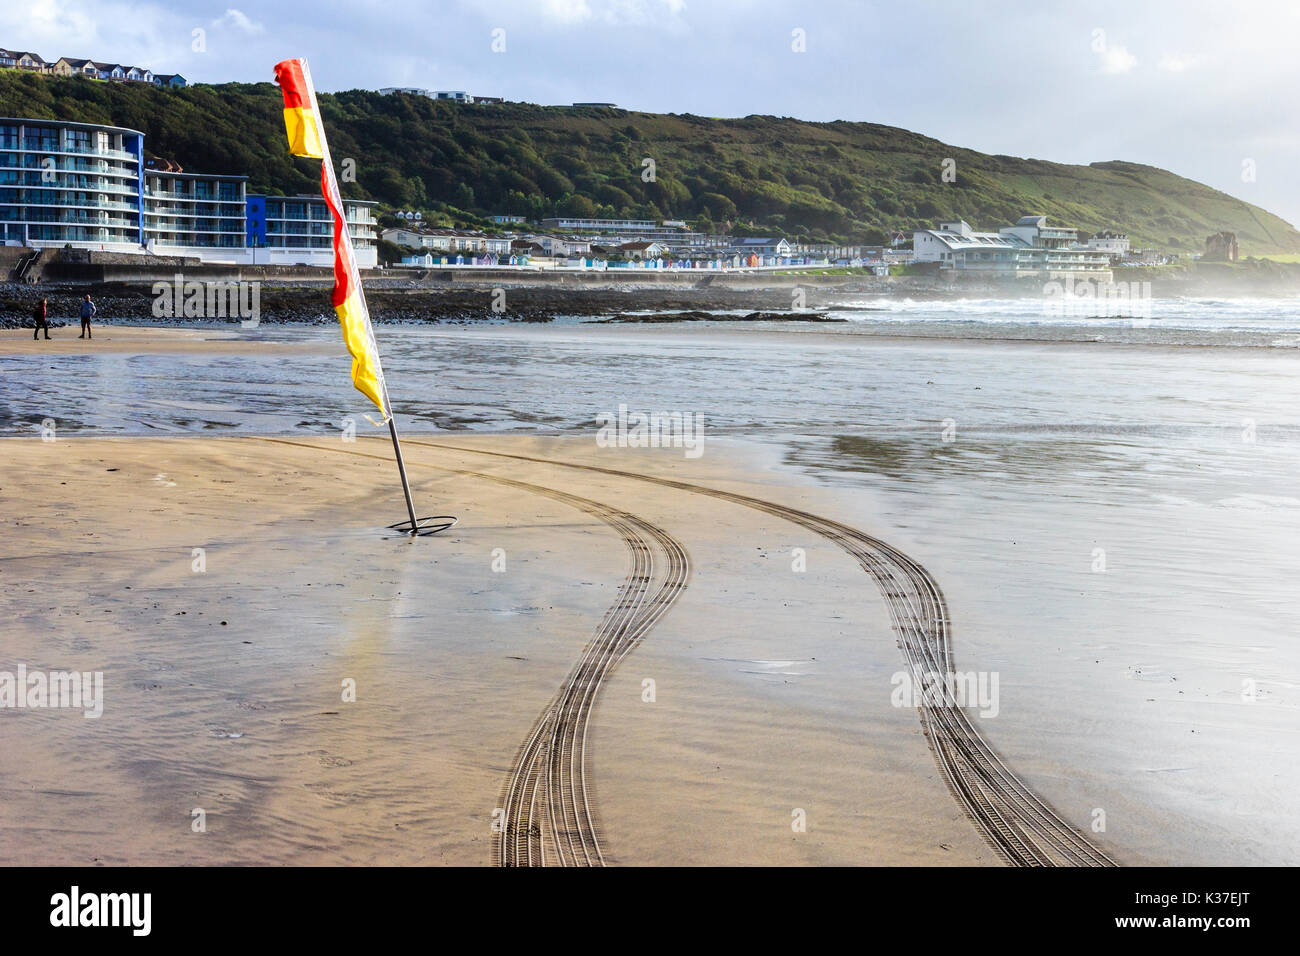 Rosso e giallo di avvertimento bandiera e tracce di pneumatici da RNLI veicolo sulla spiaggia di sabbia con la bassa marea, Condino, Devon, Inghilterra, Regno Unito Foto Stock